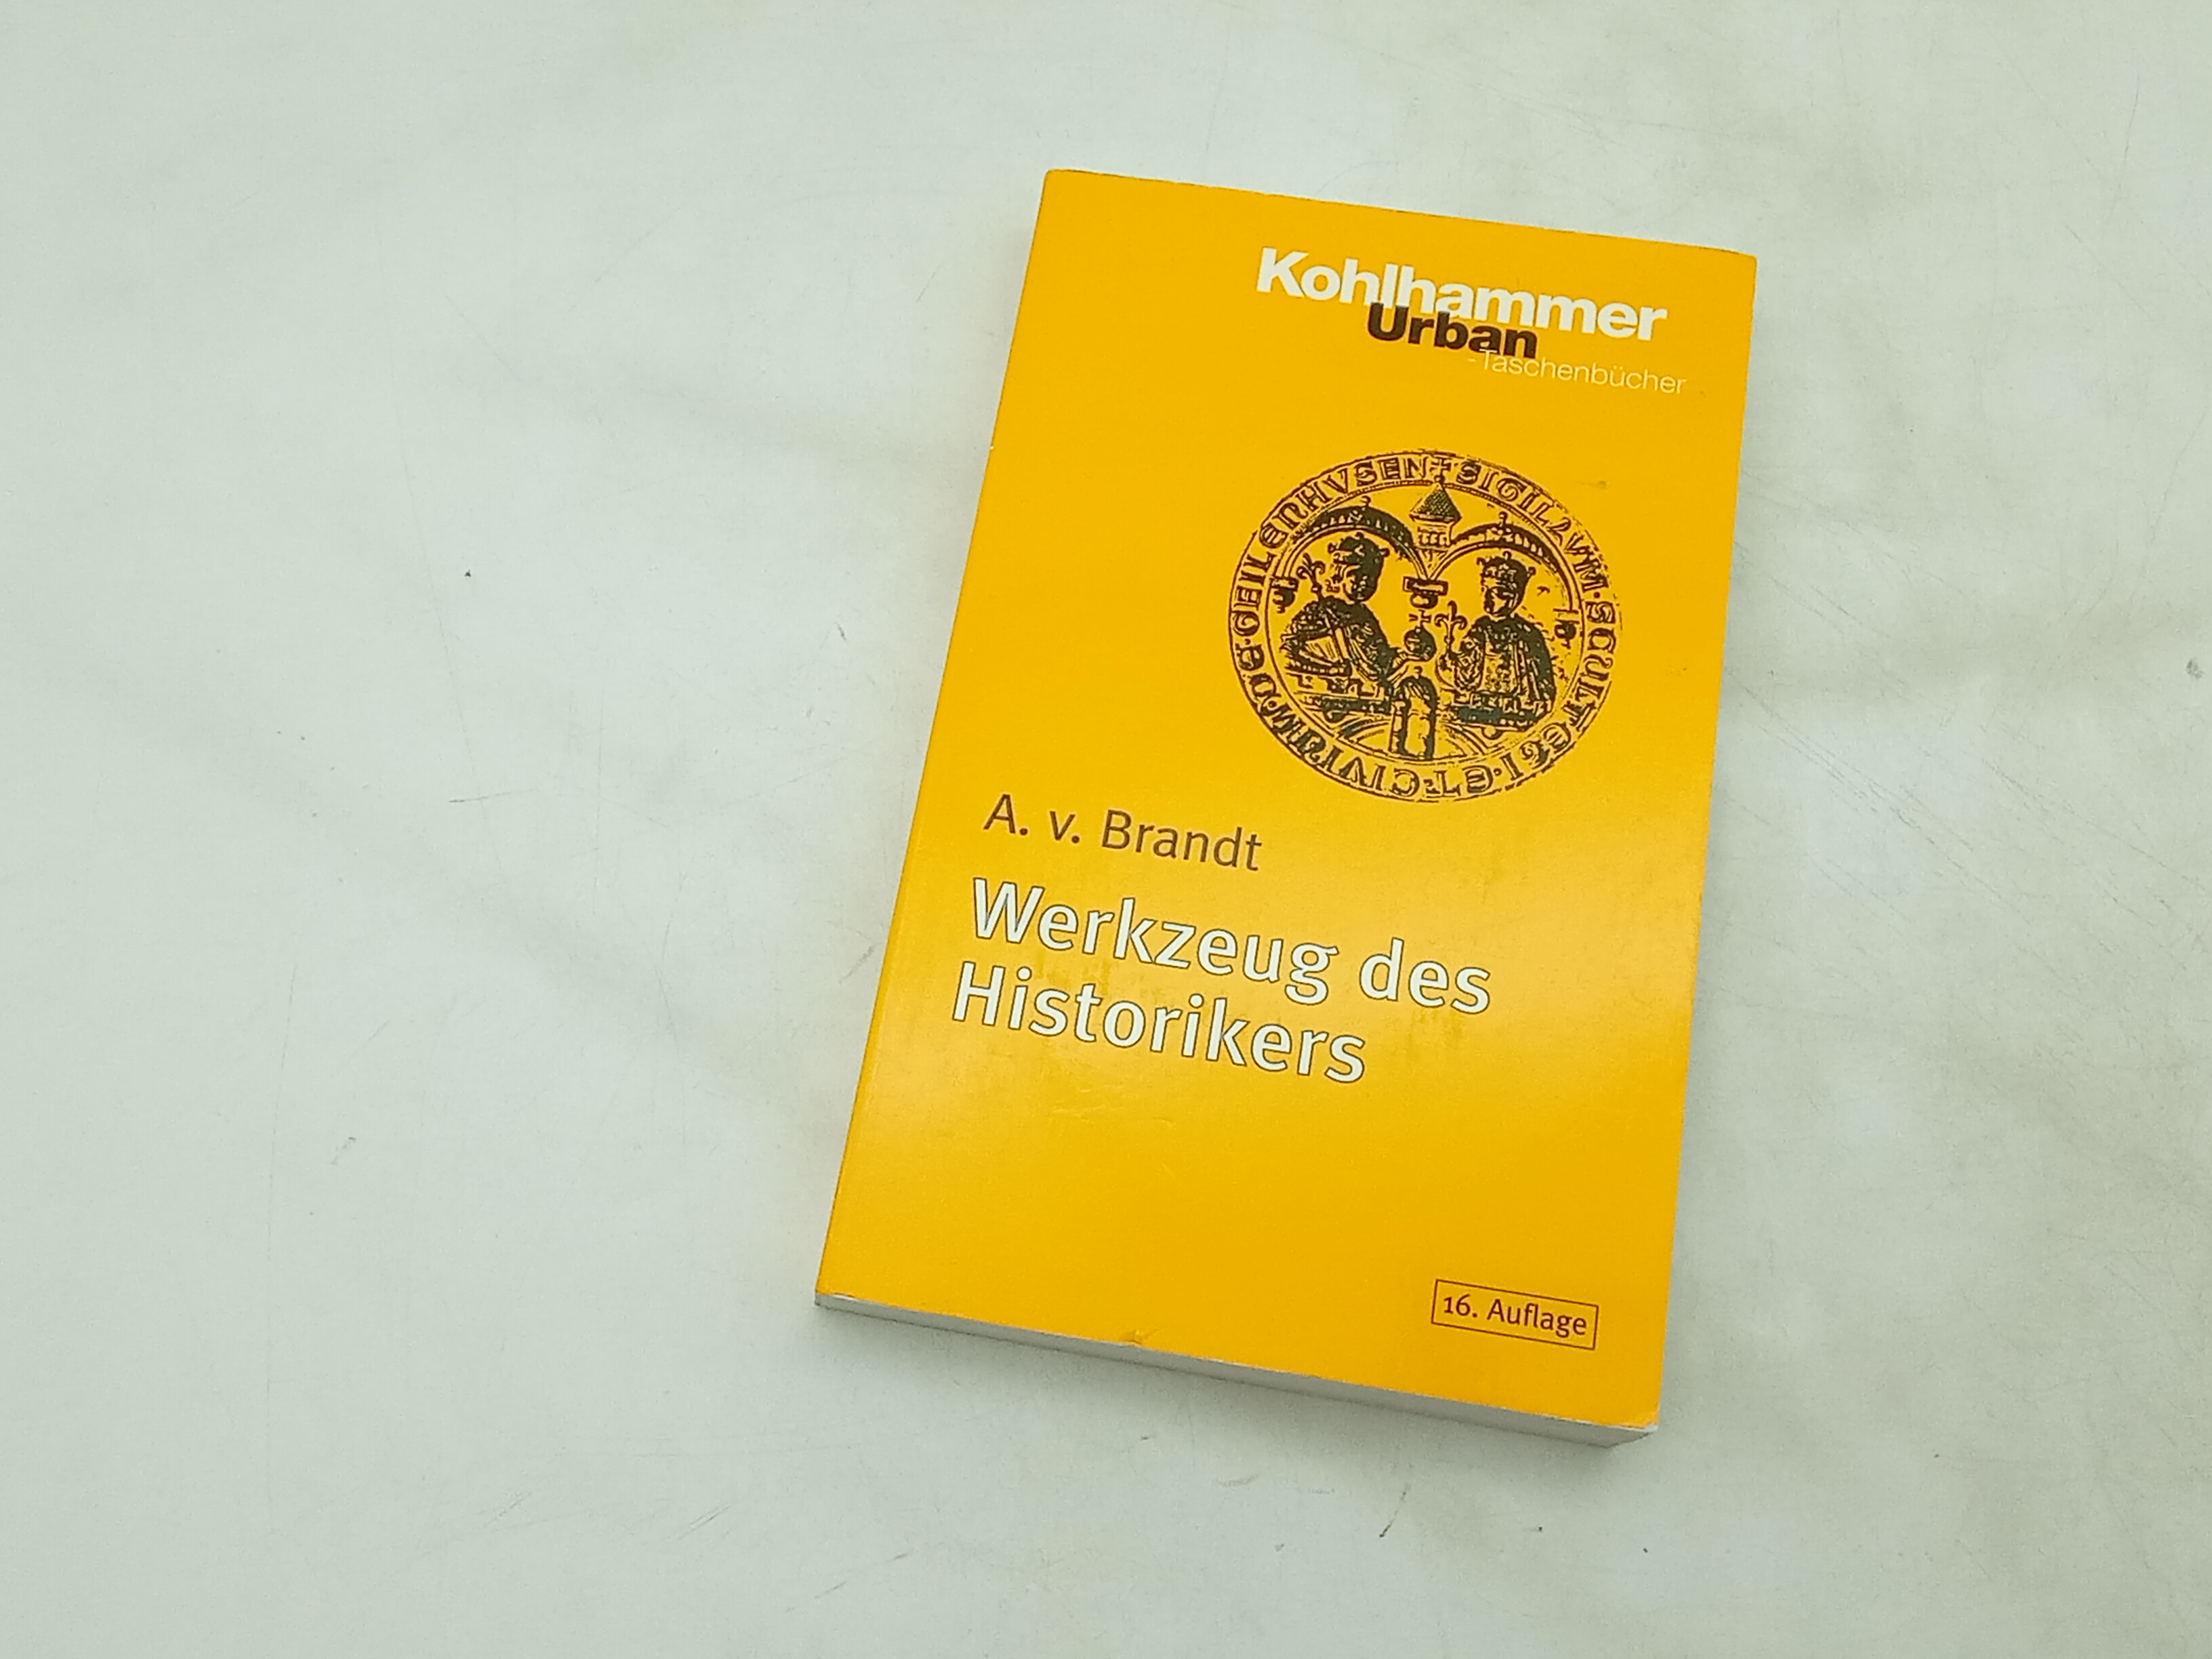 Werkzeug des Historikers: Eine Einführung in die Historischen Hilfswissenschaften (Urban-Taschenbücher) - Brandt Ahasver, von und Franz Fuchs